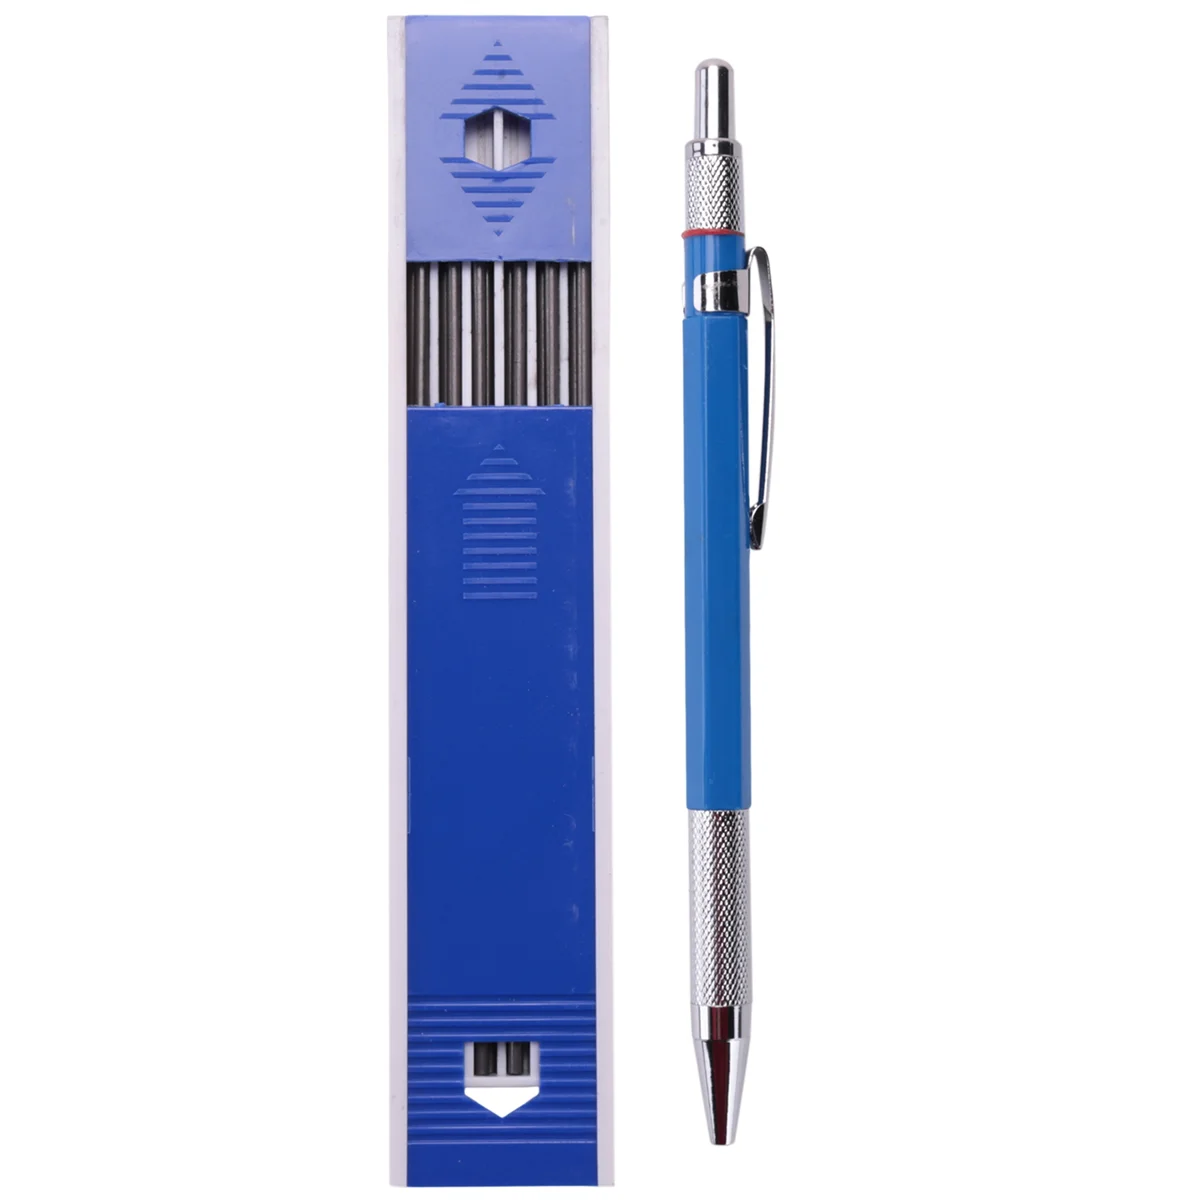 

Сварочный карандаш с 6 круглыми заправками, 2,0 мм, механический карандаш-маркер для фитинга труб, сварочного аппарата, строительства, деревообработки